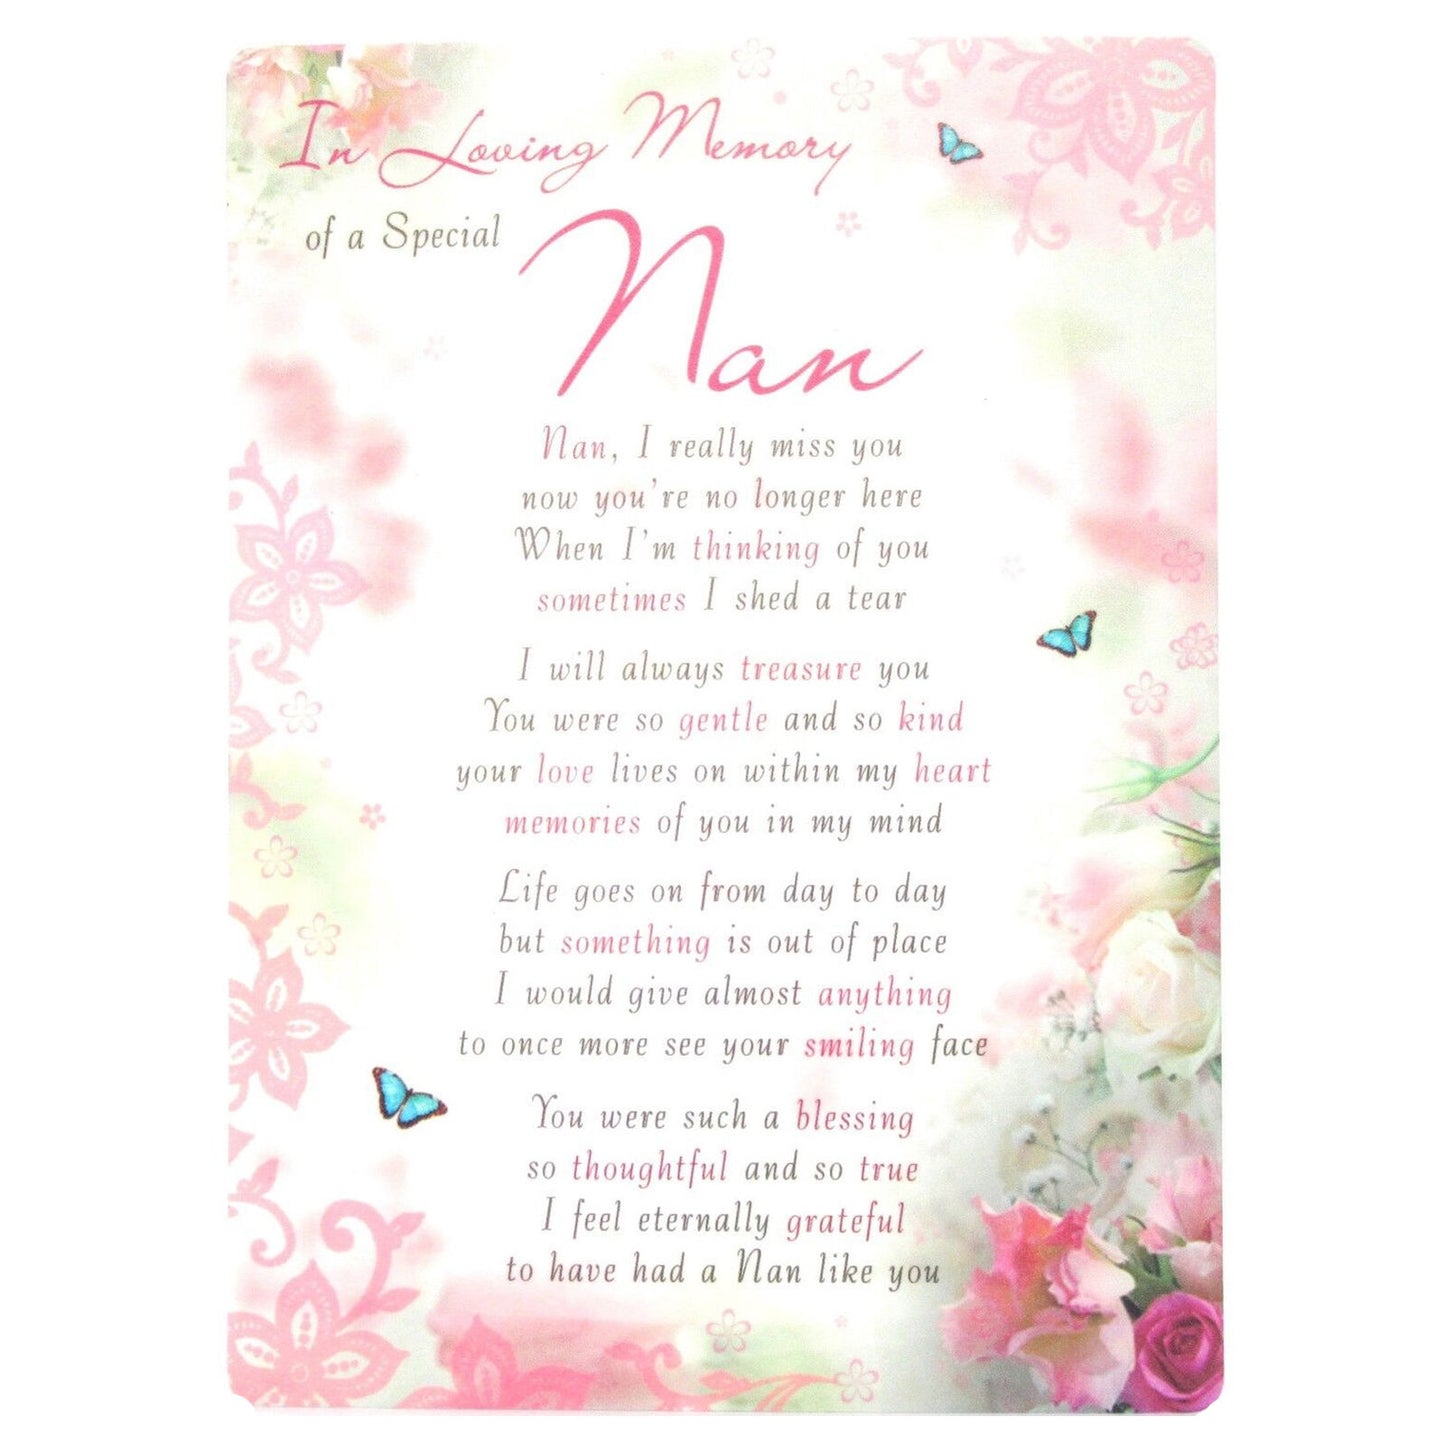 Loving Memory Memorial Card - Nan